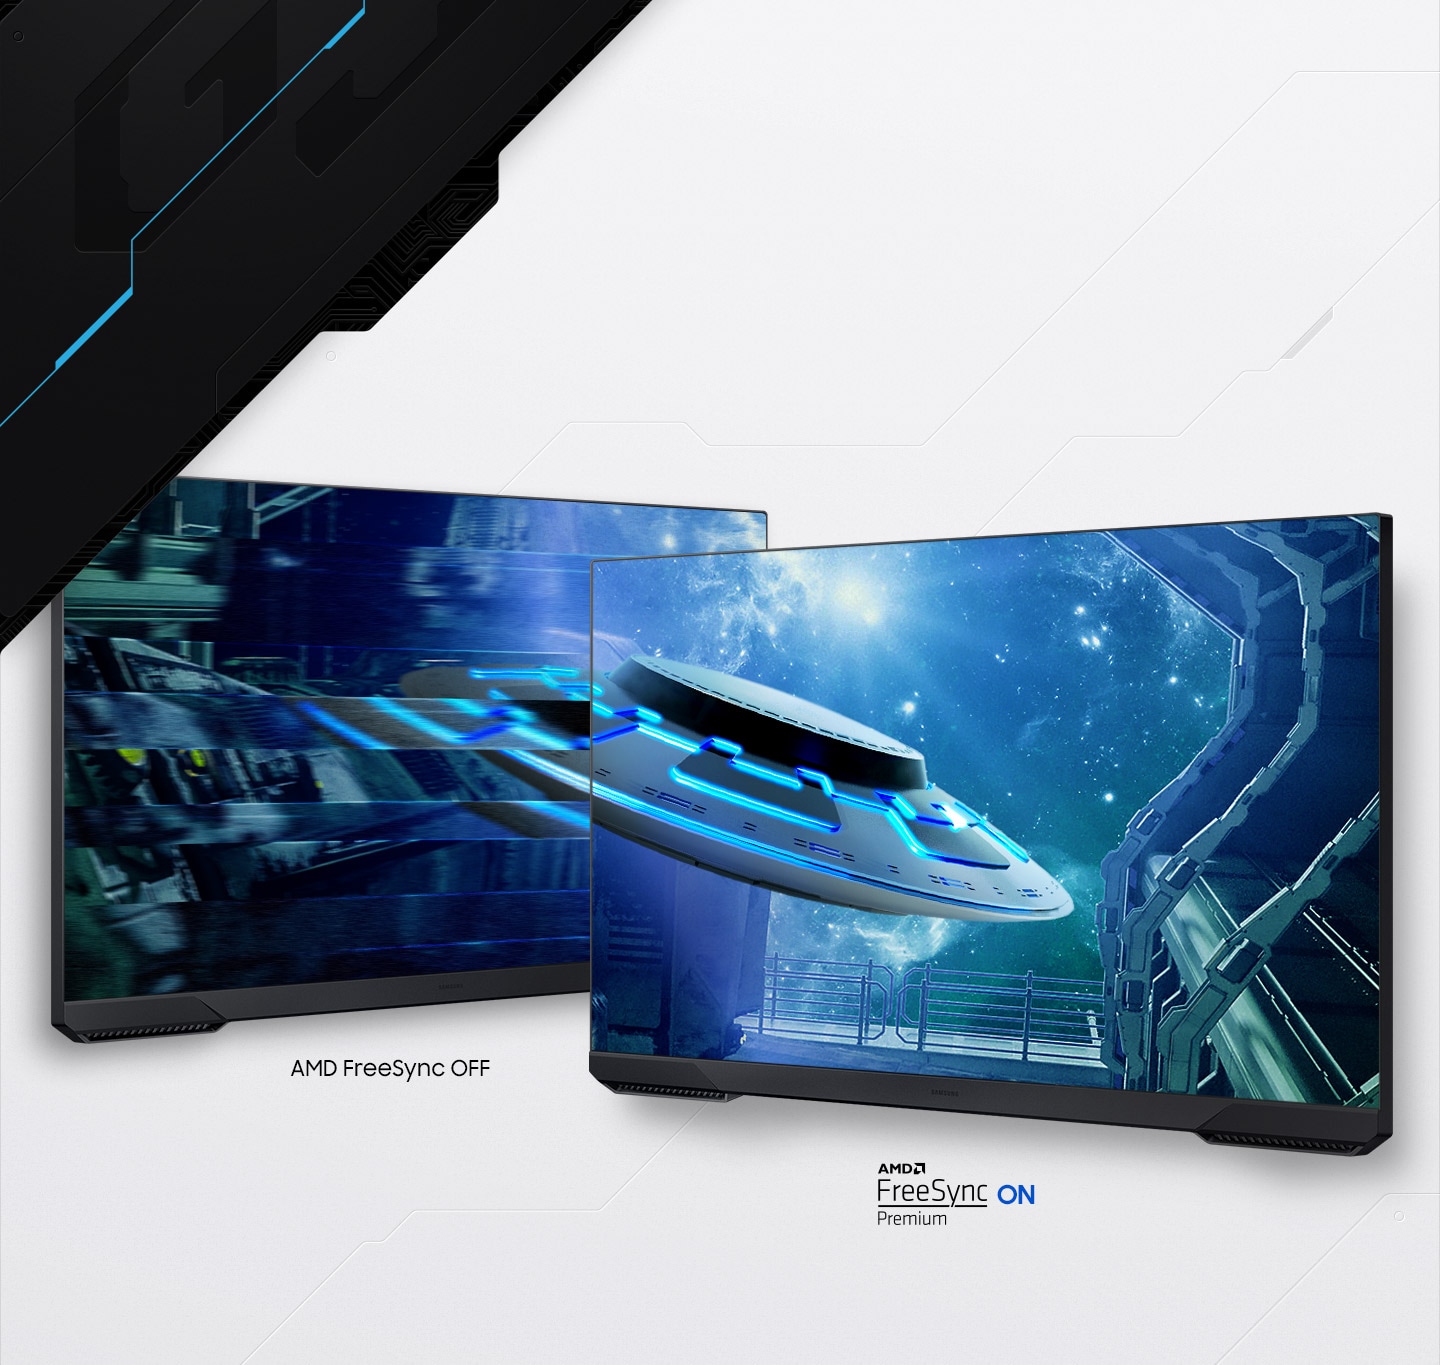 Hai màn hình hiển thị cùng một cảnh một con tàu sao bay qua nhà chứa máy bay của một con tàu vũ trụ lớn hơn hướng tới không gian sâu. Màn hình của màn hình bên trái khi tắt FreeSync bị rời rạc với hiện tượng giật màn hình chói tai trong khi màn hình bên phải khi bật FreeSync Premium hiển thị phi thuyền với độ rõ nét hoàn hảo.